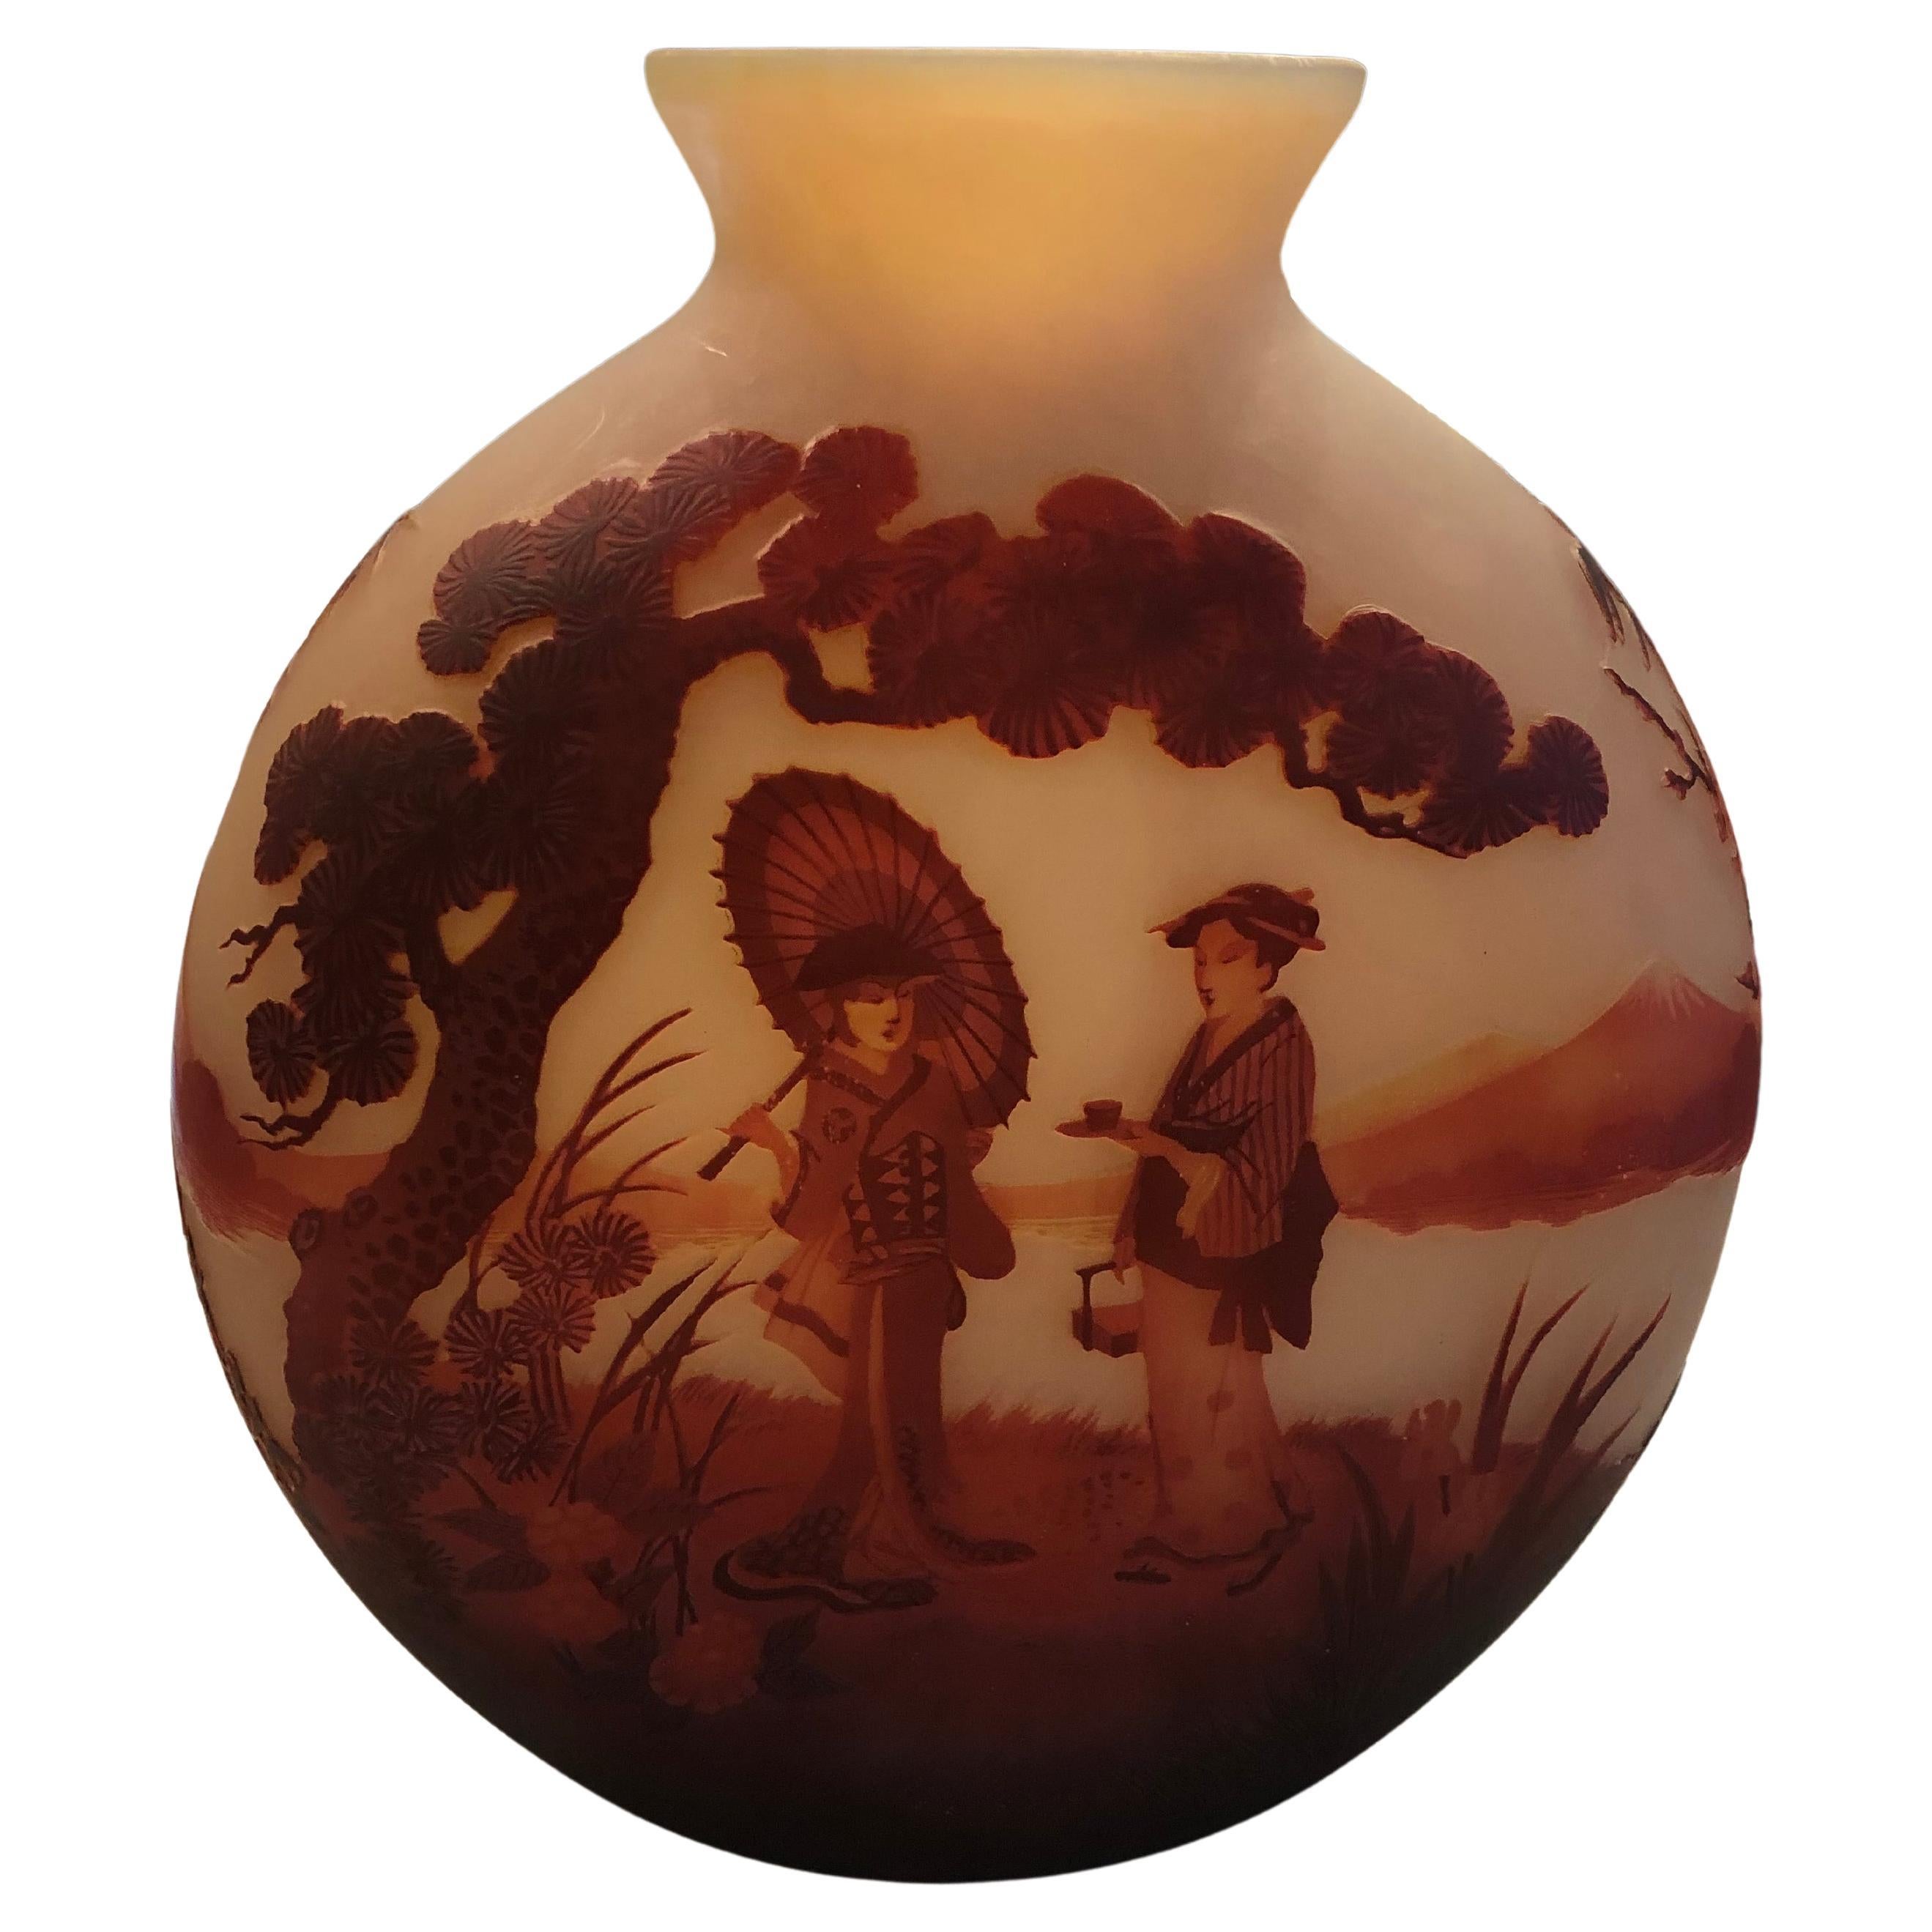 Unusual Vase, Muller Fres Luneville, Style: Jugendstil, Art Nouveau, Liberty